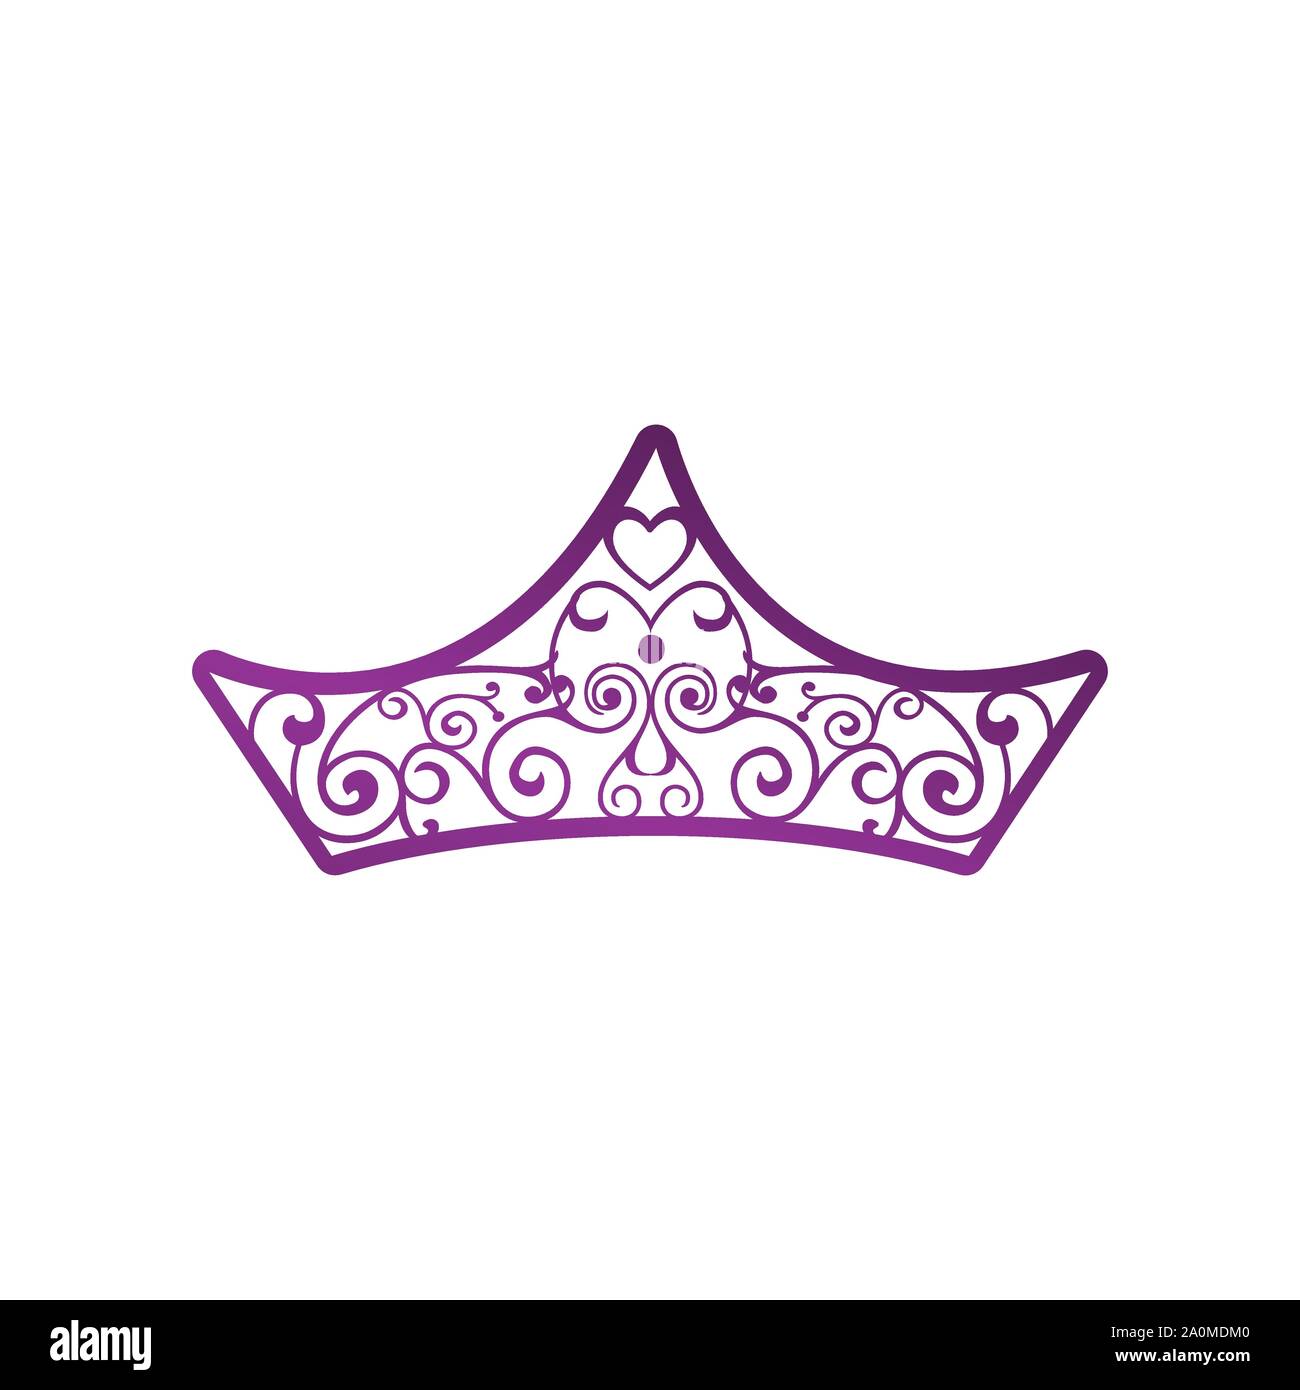 Abstrakte Crown Logo Vektor Royal König Königin abstrakt Design Stock Vektor